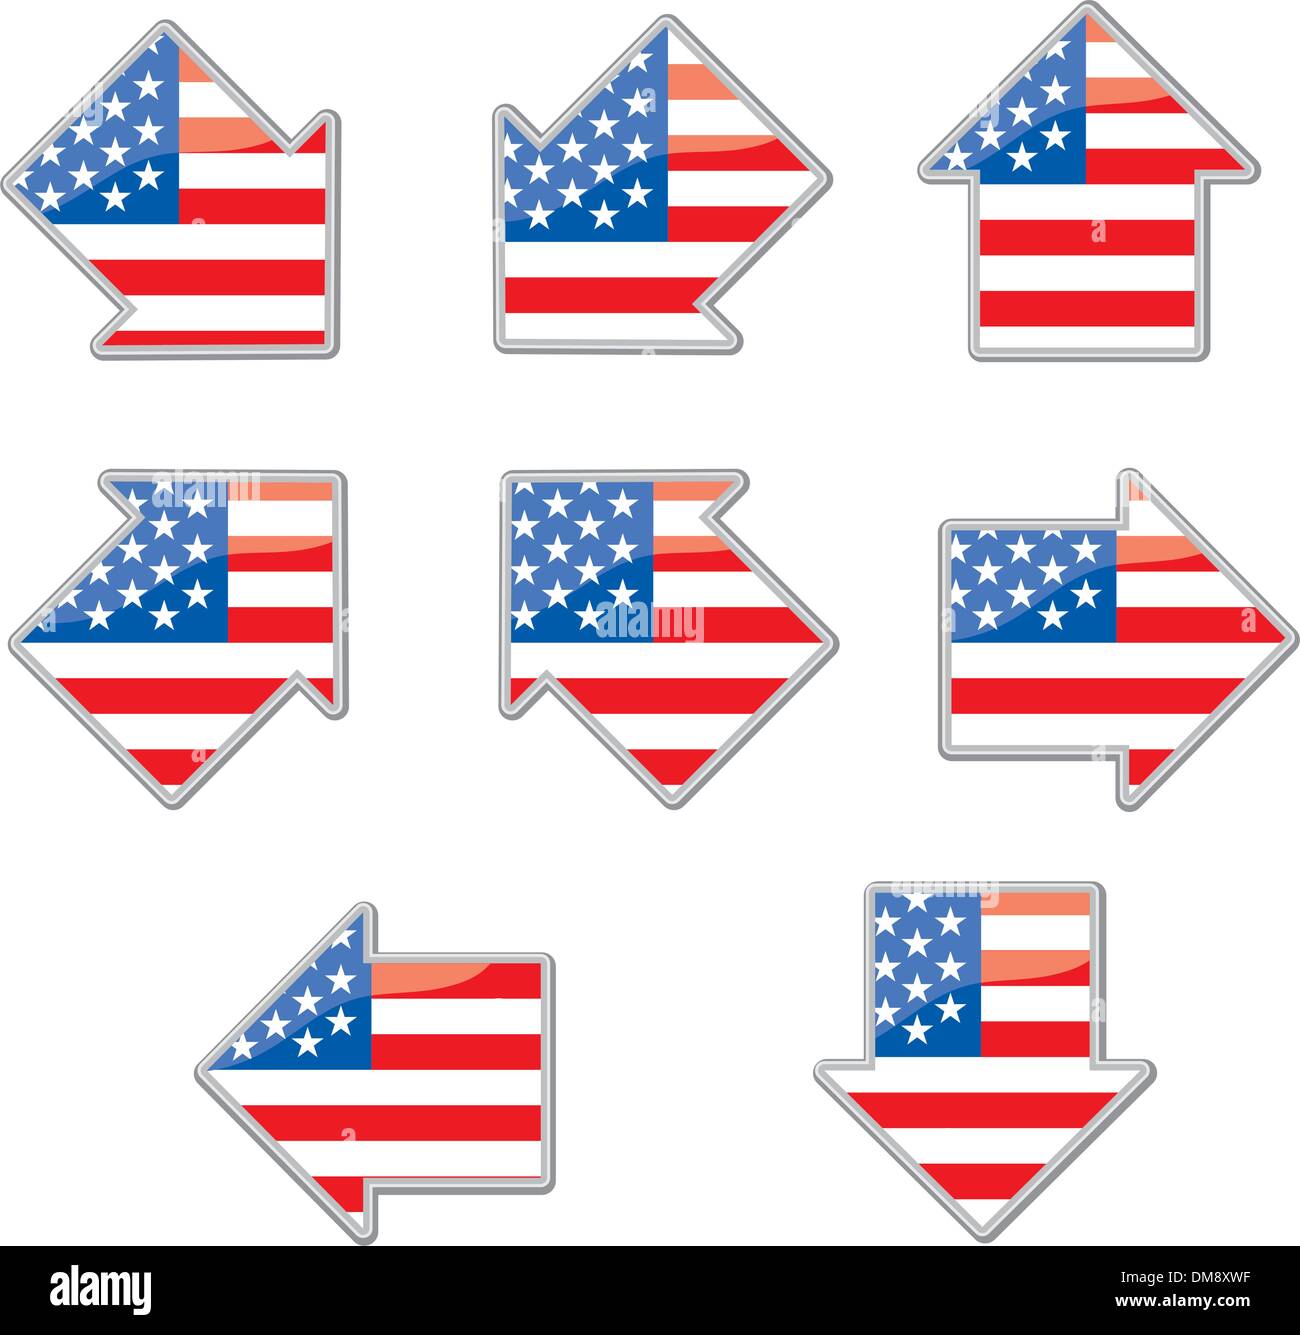 USA flag arrow placards Stock Vector